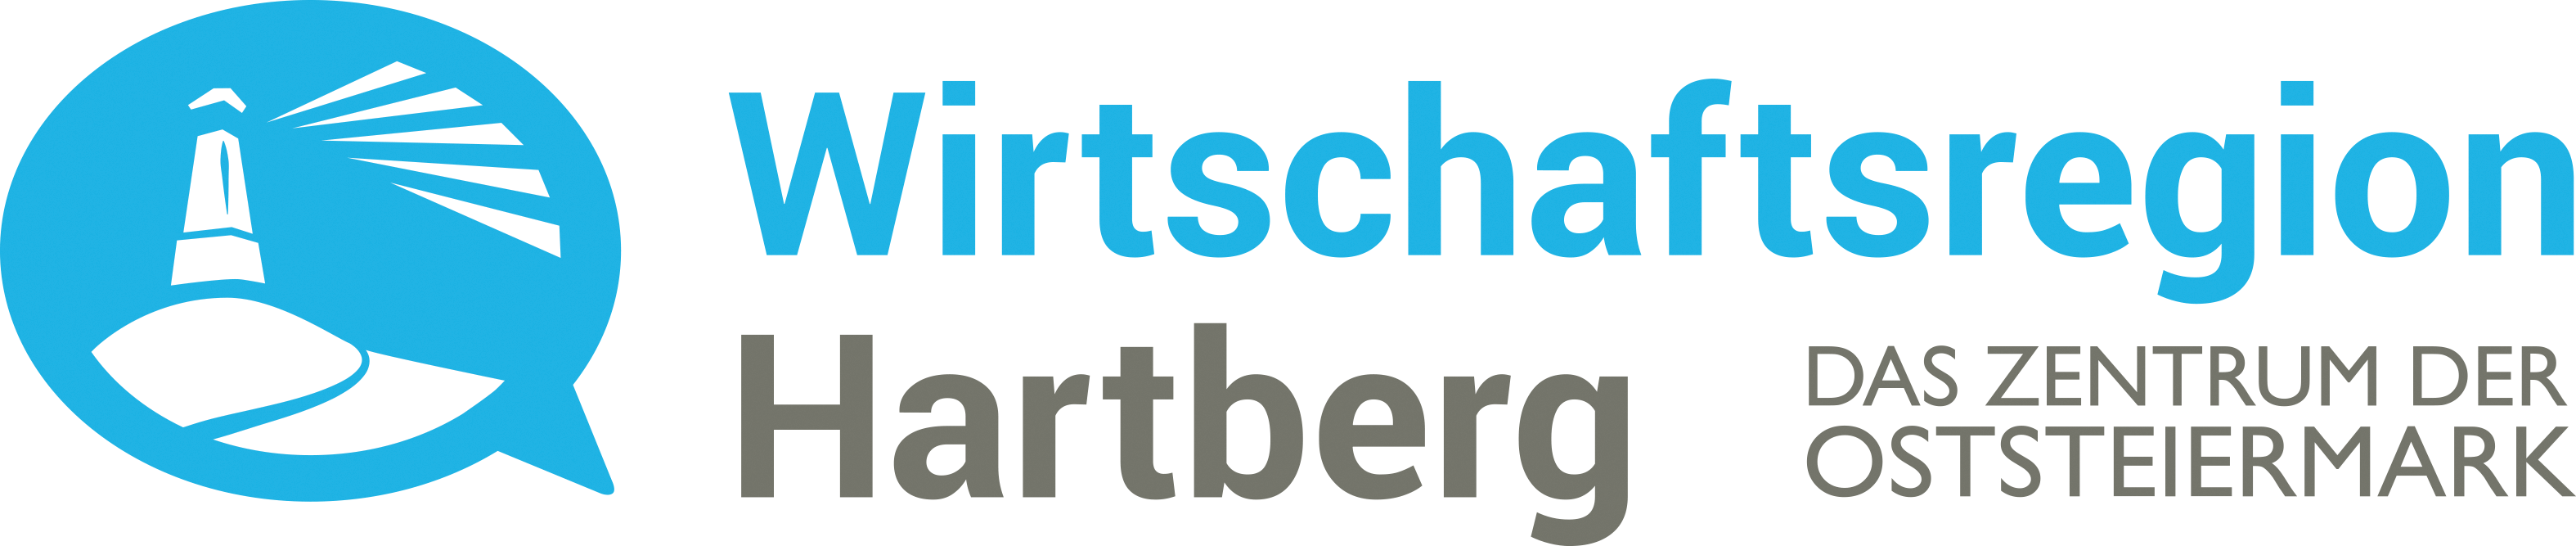 Wirtschaftsregion Hartberg Logo